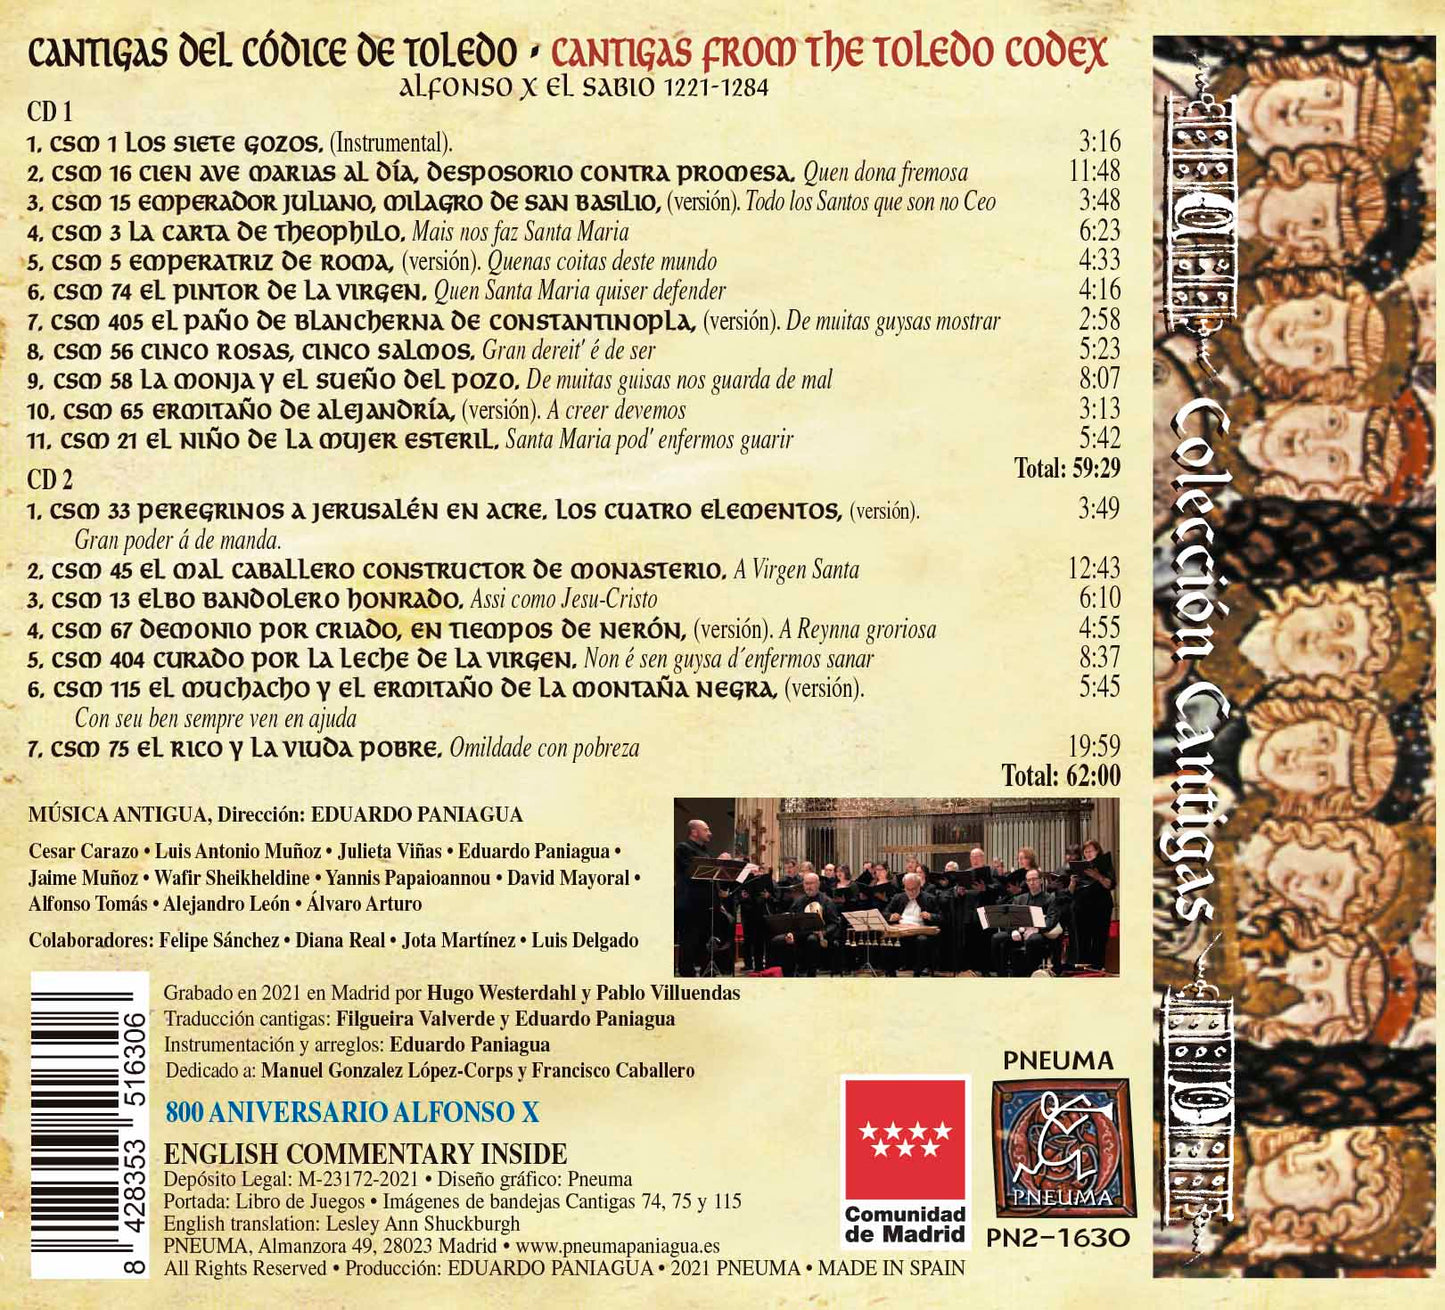 PN 1630 CANTIGAS DEL CÓDICE DE TOLEDO, DOBLE CD